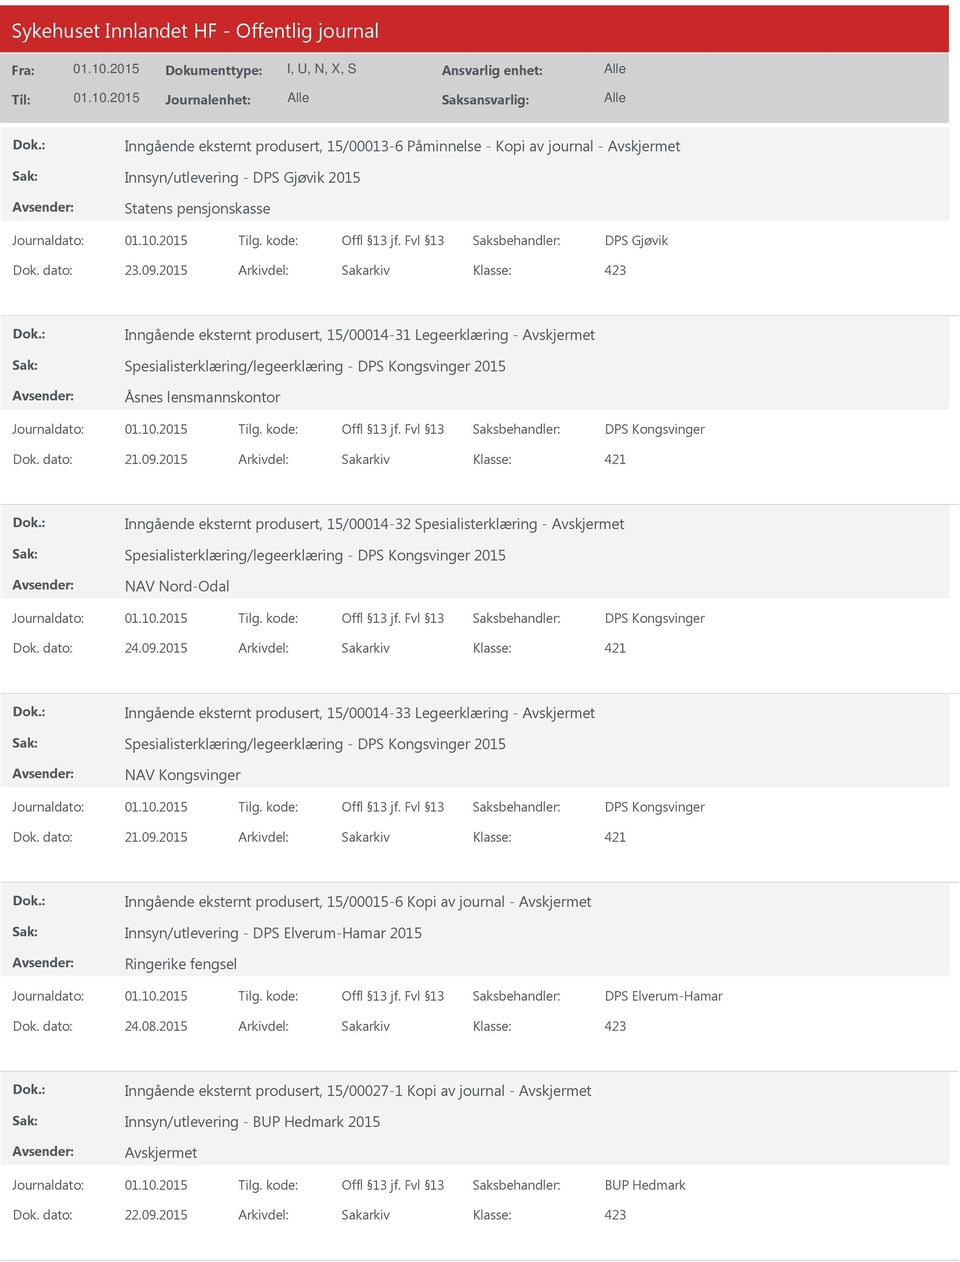 2015 Arkivdel: Sakarkiv Inngående eksternt produsert, 15/00014-32 Spesialisterklæring - Spesialisterklæring/legeerklæring - DPS Kongsvinger 2015 NAV Nord-Odal DPS Kongsvinger Inngående eksternt